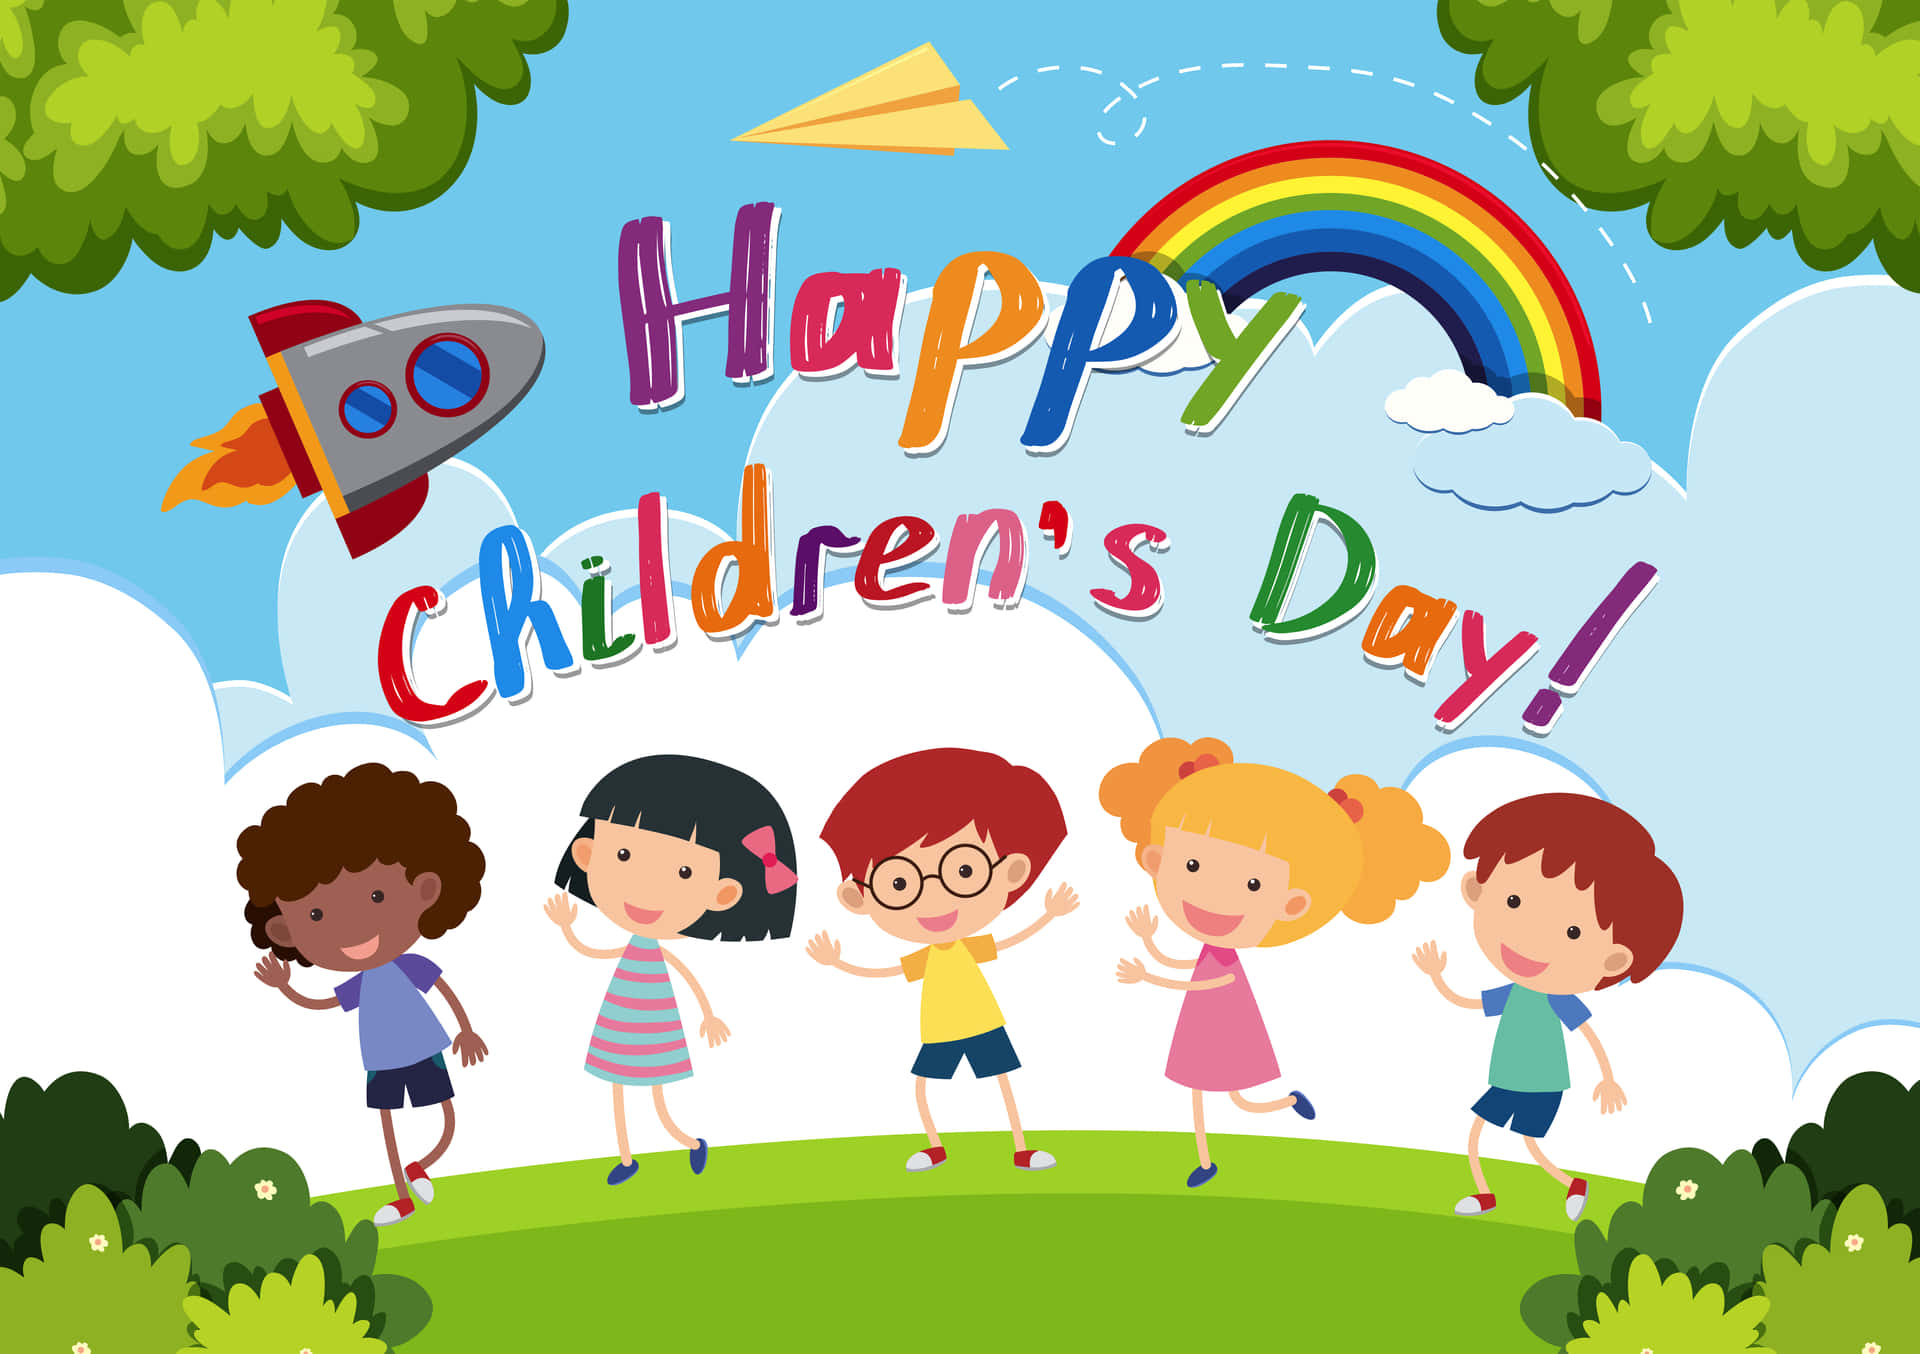 Celebrating Joy And Innocence On Children's Day Wallpaper